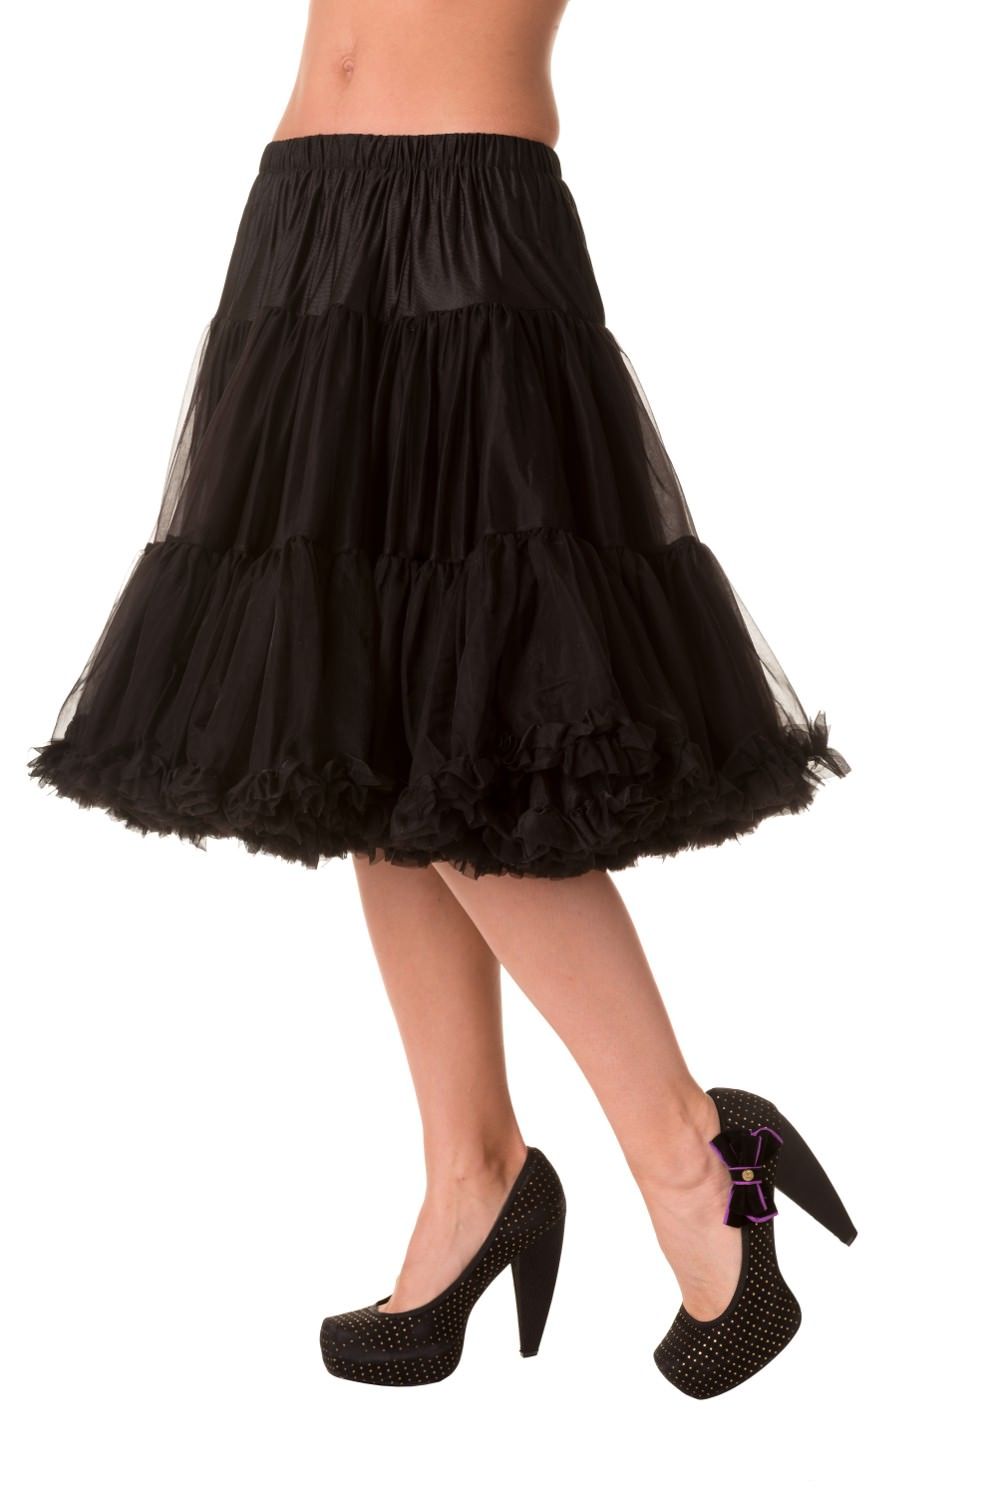 Banned SBN235 Starlite Petticoat Black